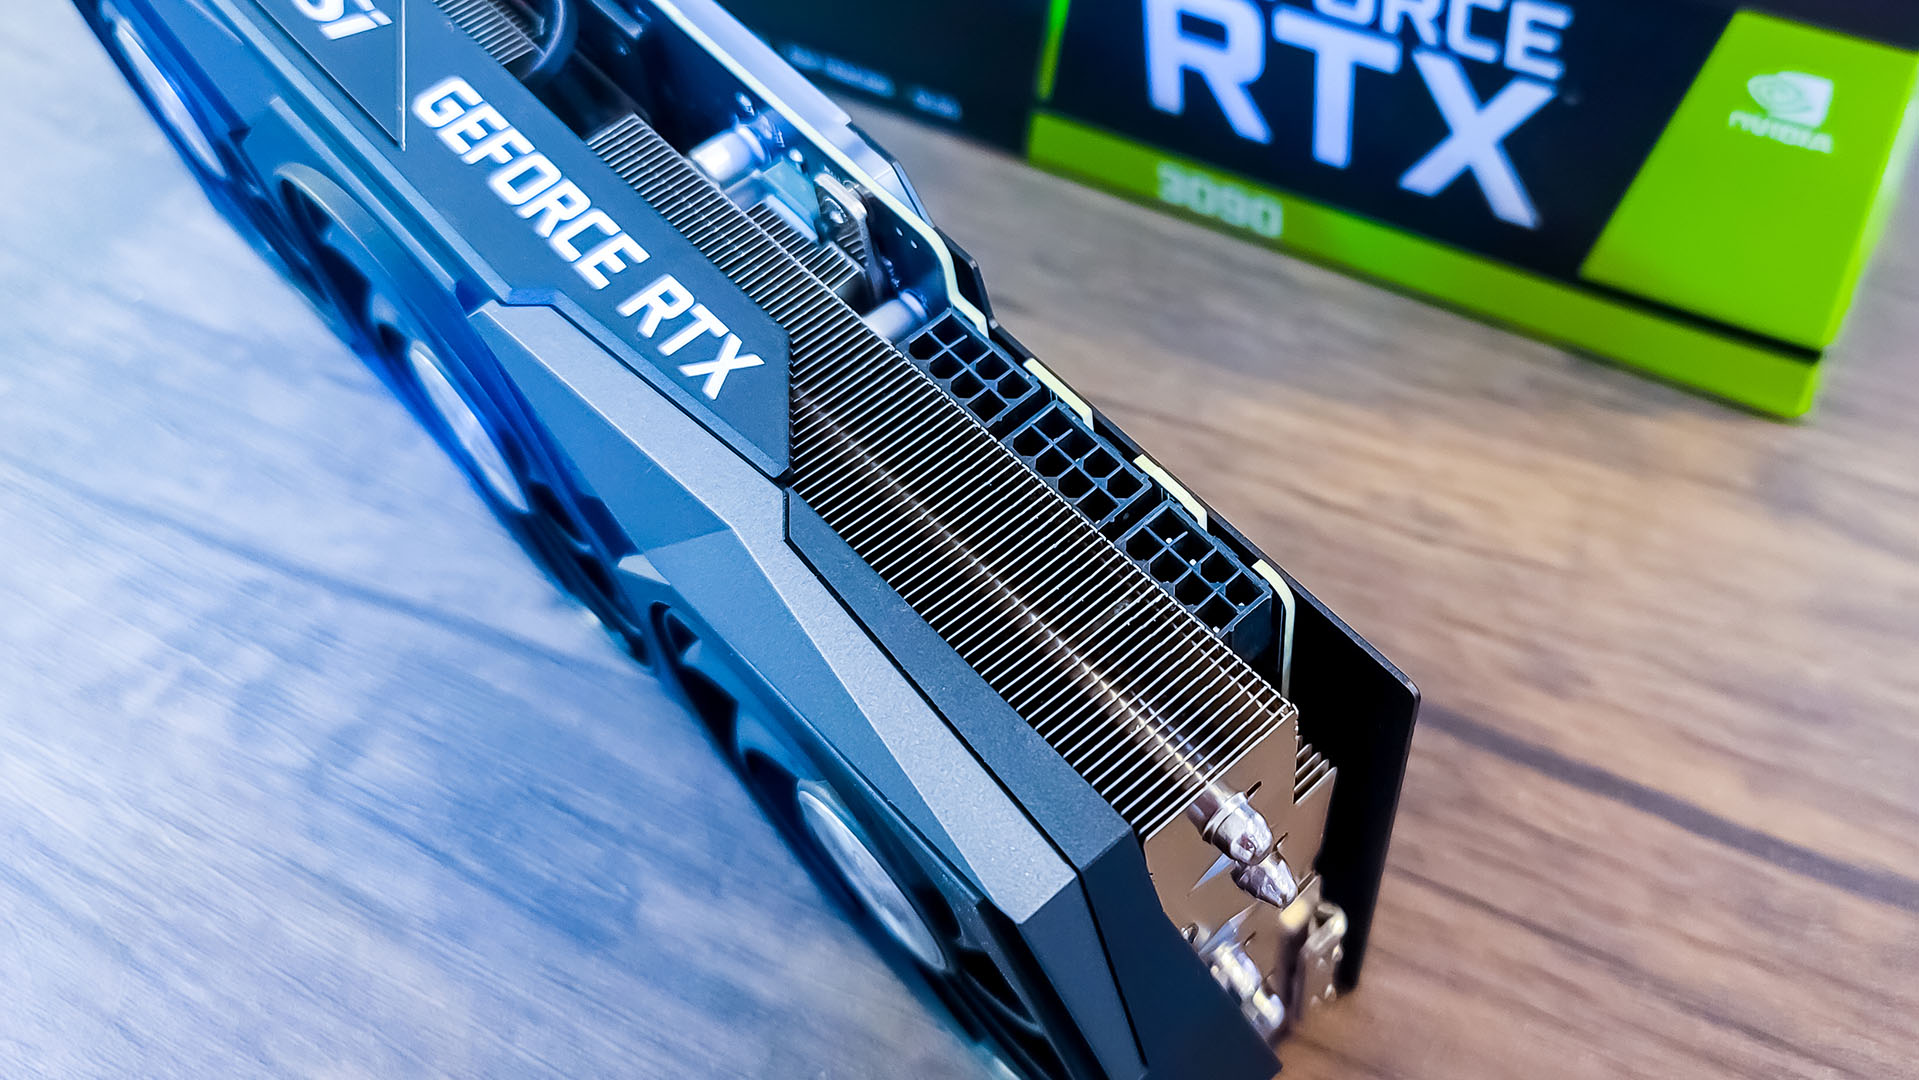 MSI GeForce RTX 3090 Gaming X Trio set oppefra på et bord.